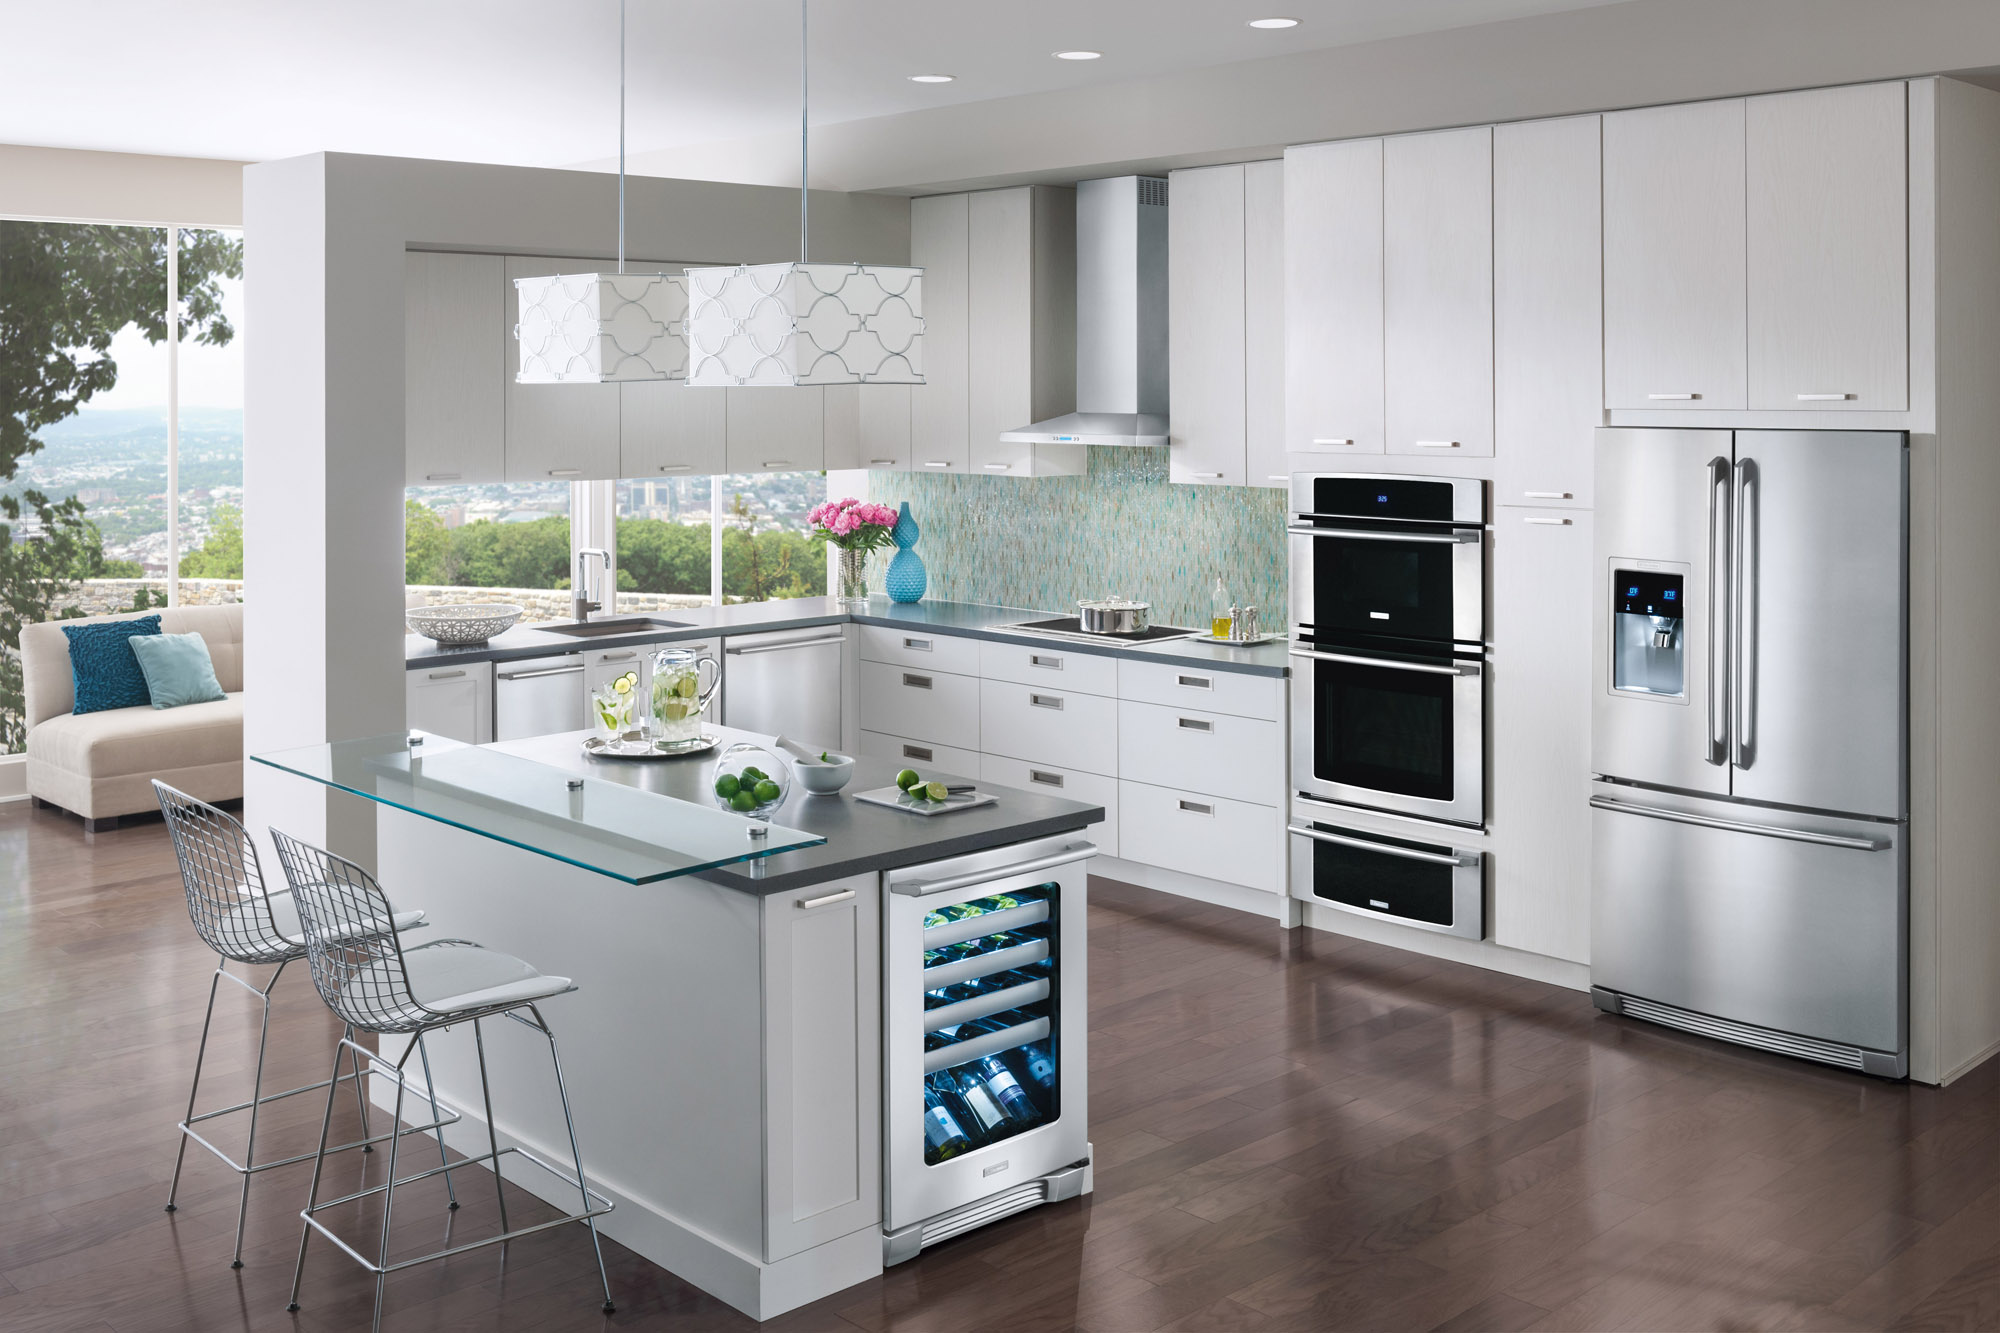 kitchen appliance design trends